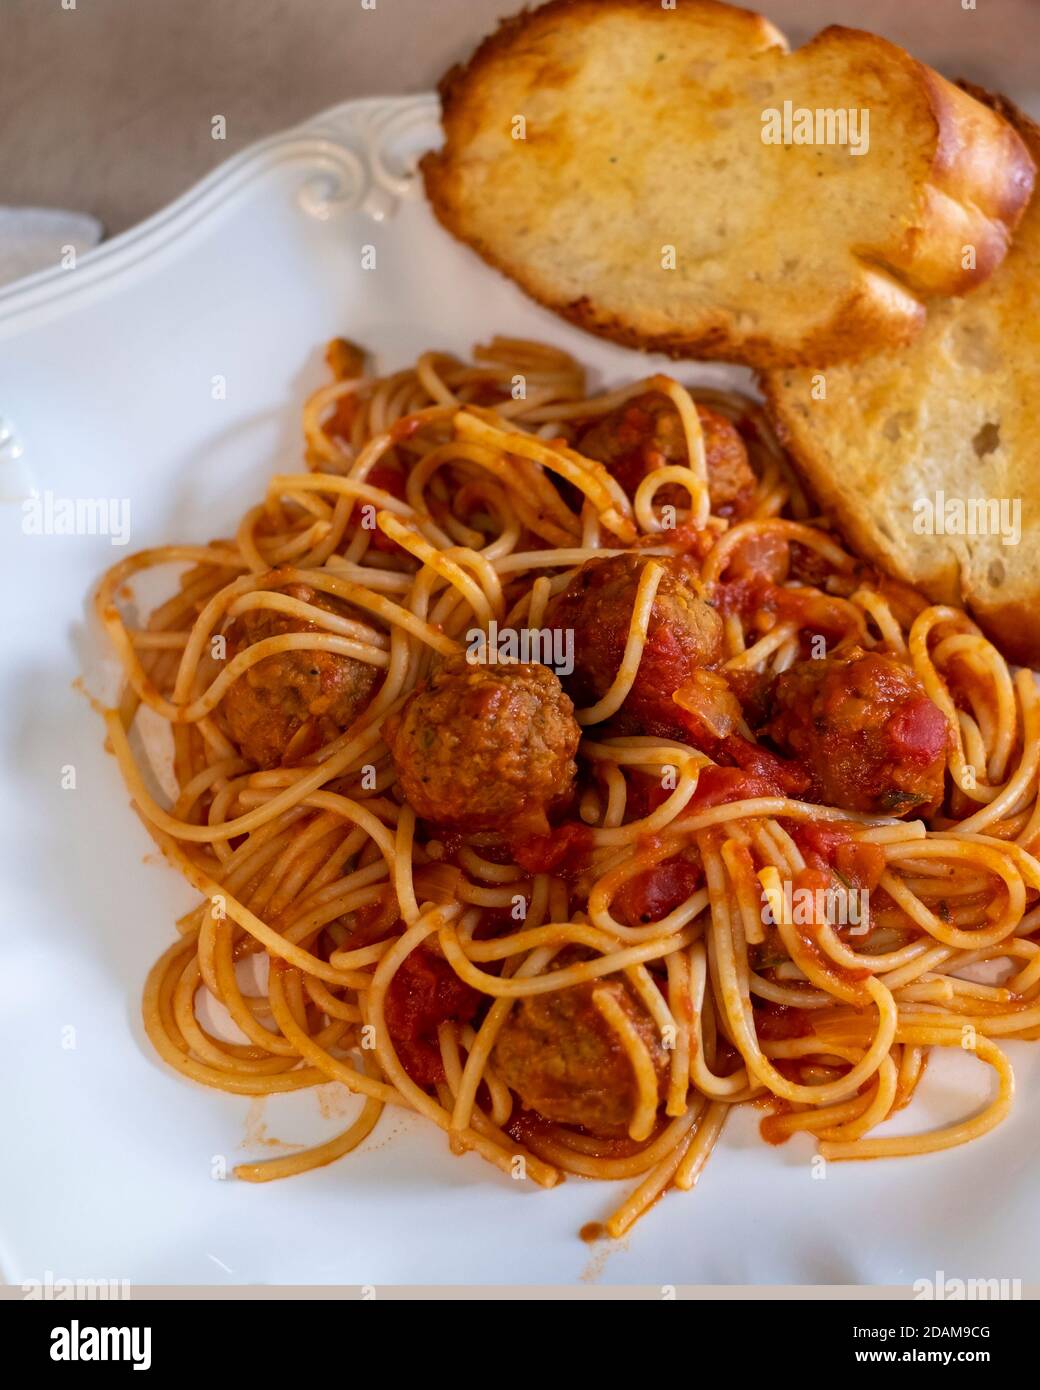 Spaghetti cuits et boulettes de bœuf sur une assiette blanche avec pain à l'ail grillé. Gros plan. Banque D'Images